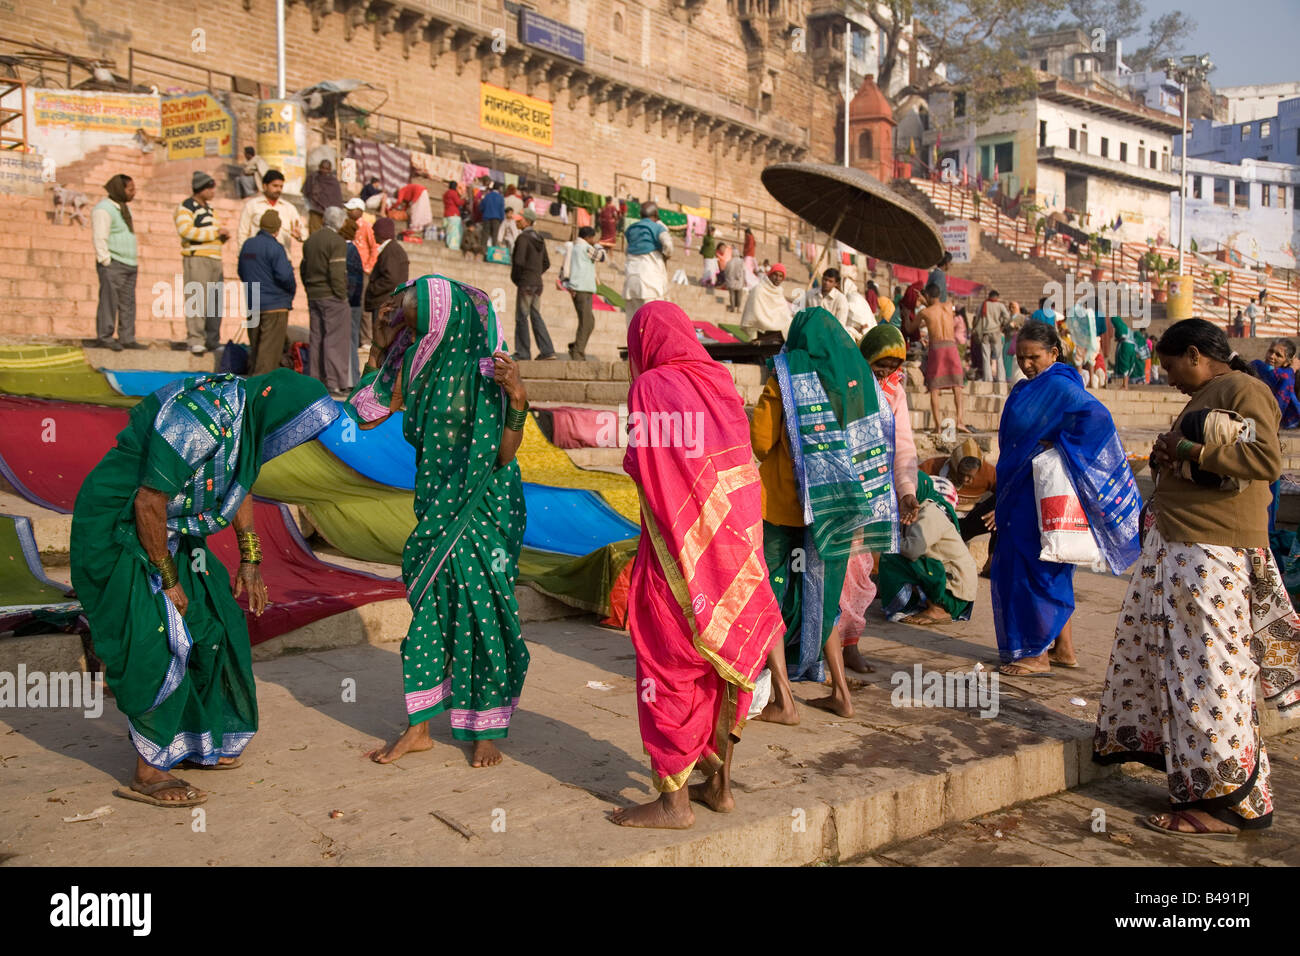 Les femmes portent des saris hindous sur le Man Mandir Ghat de la ville de Varanasi, en Inde. Banque D'Images